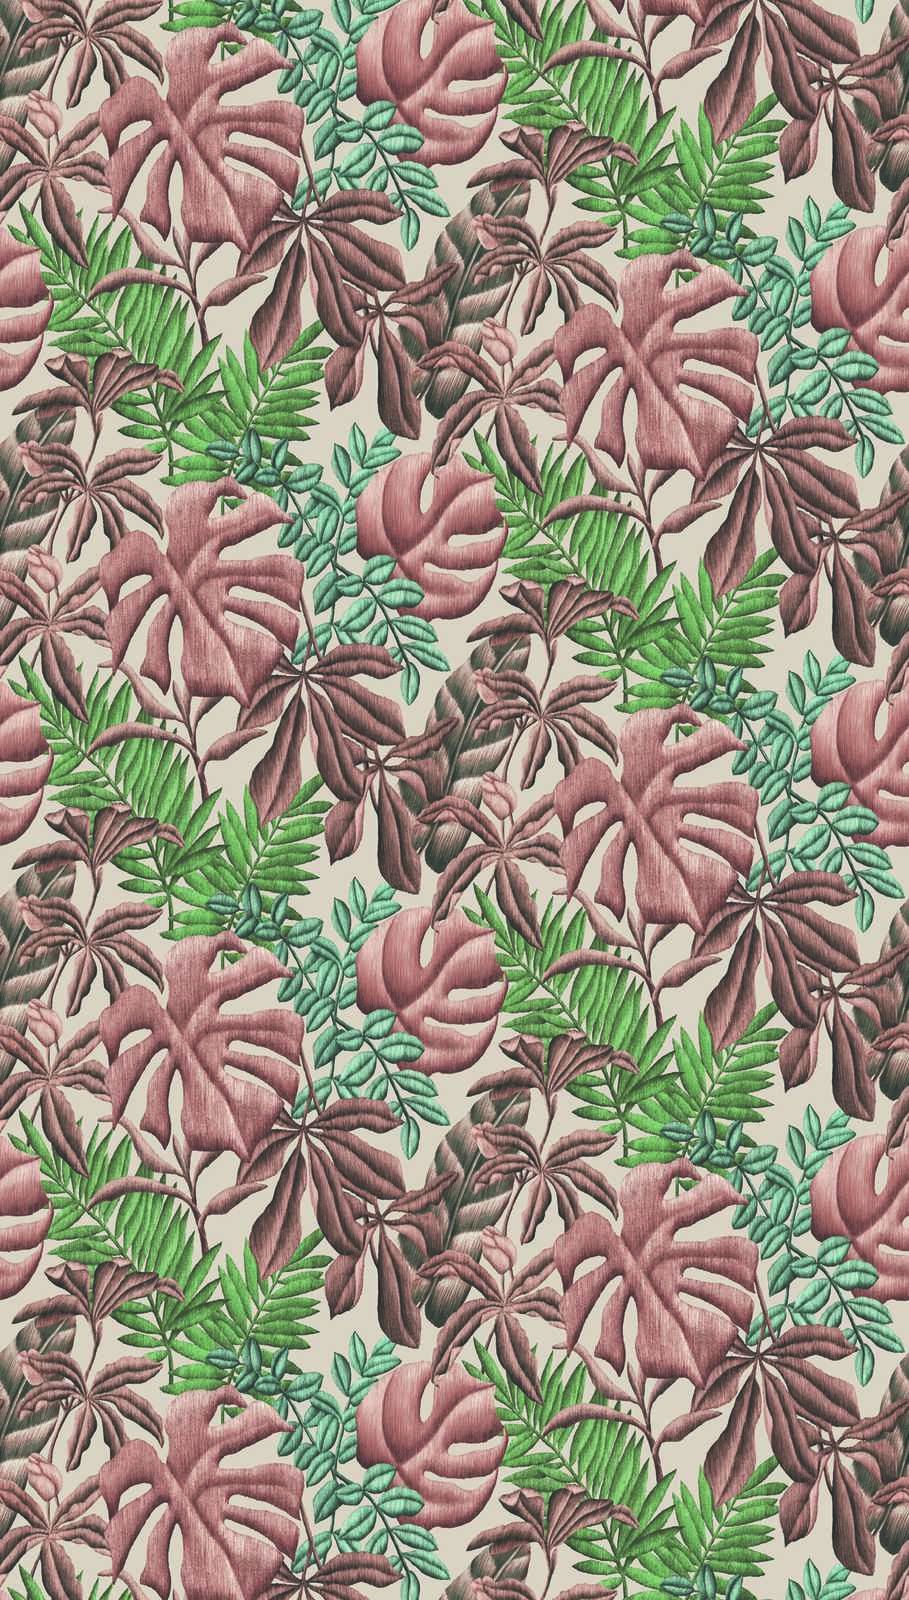             Papier peint intissé à motifs de feuilles de bananier & fougère - rose, vert, crème
        